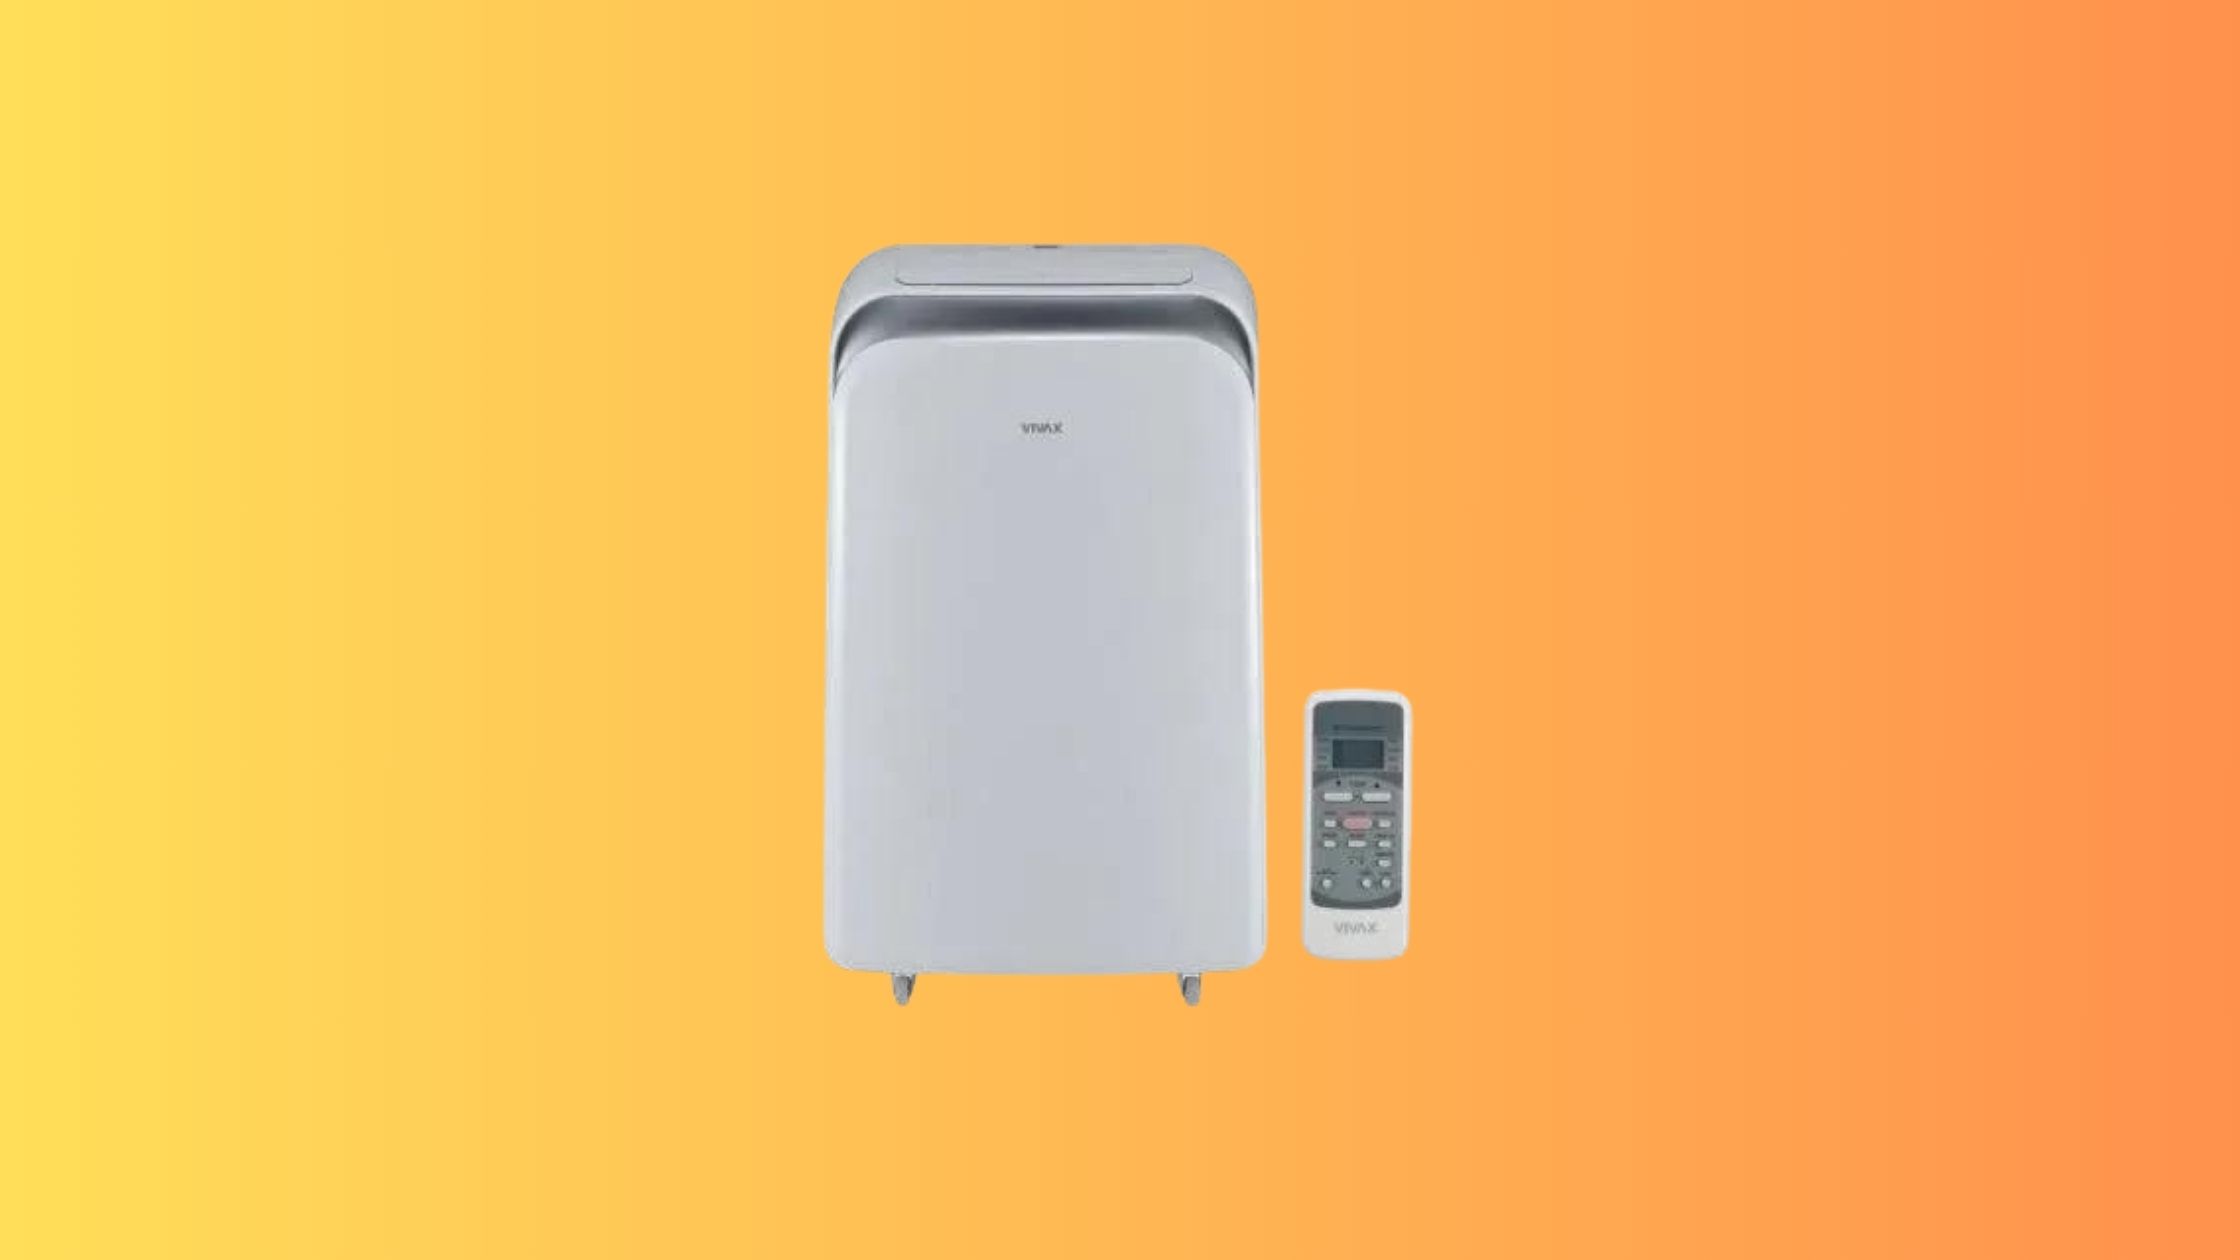 Le climatiseur mobile Vivax est à petit prix durant les soldes, une aubaine pour se rafraîchir durant l'été © Cdiscount